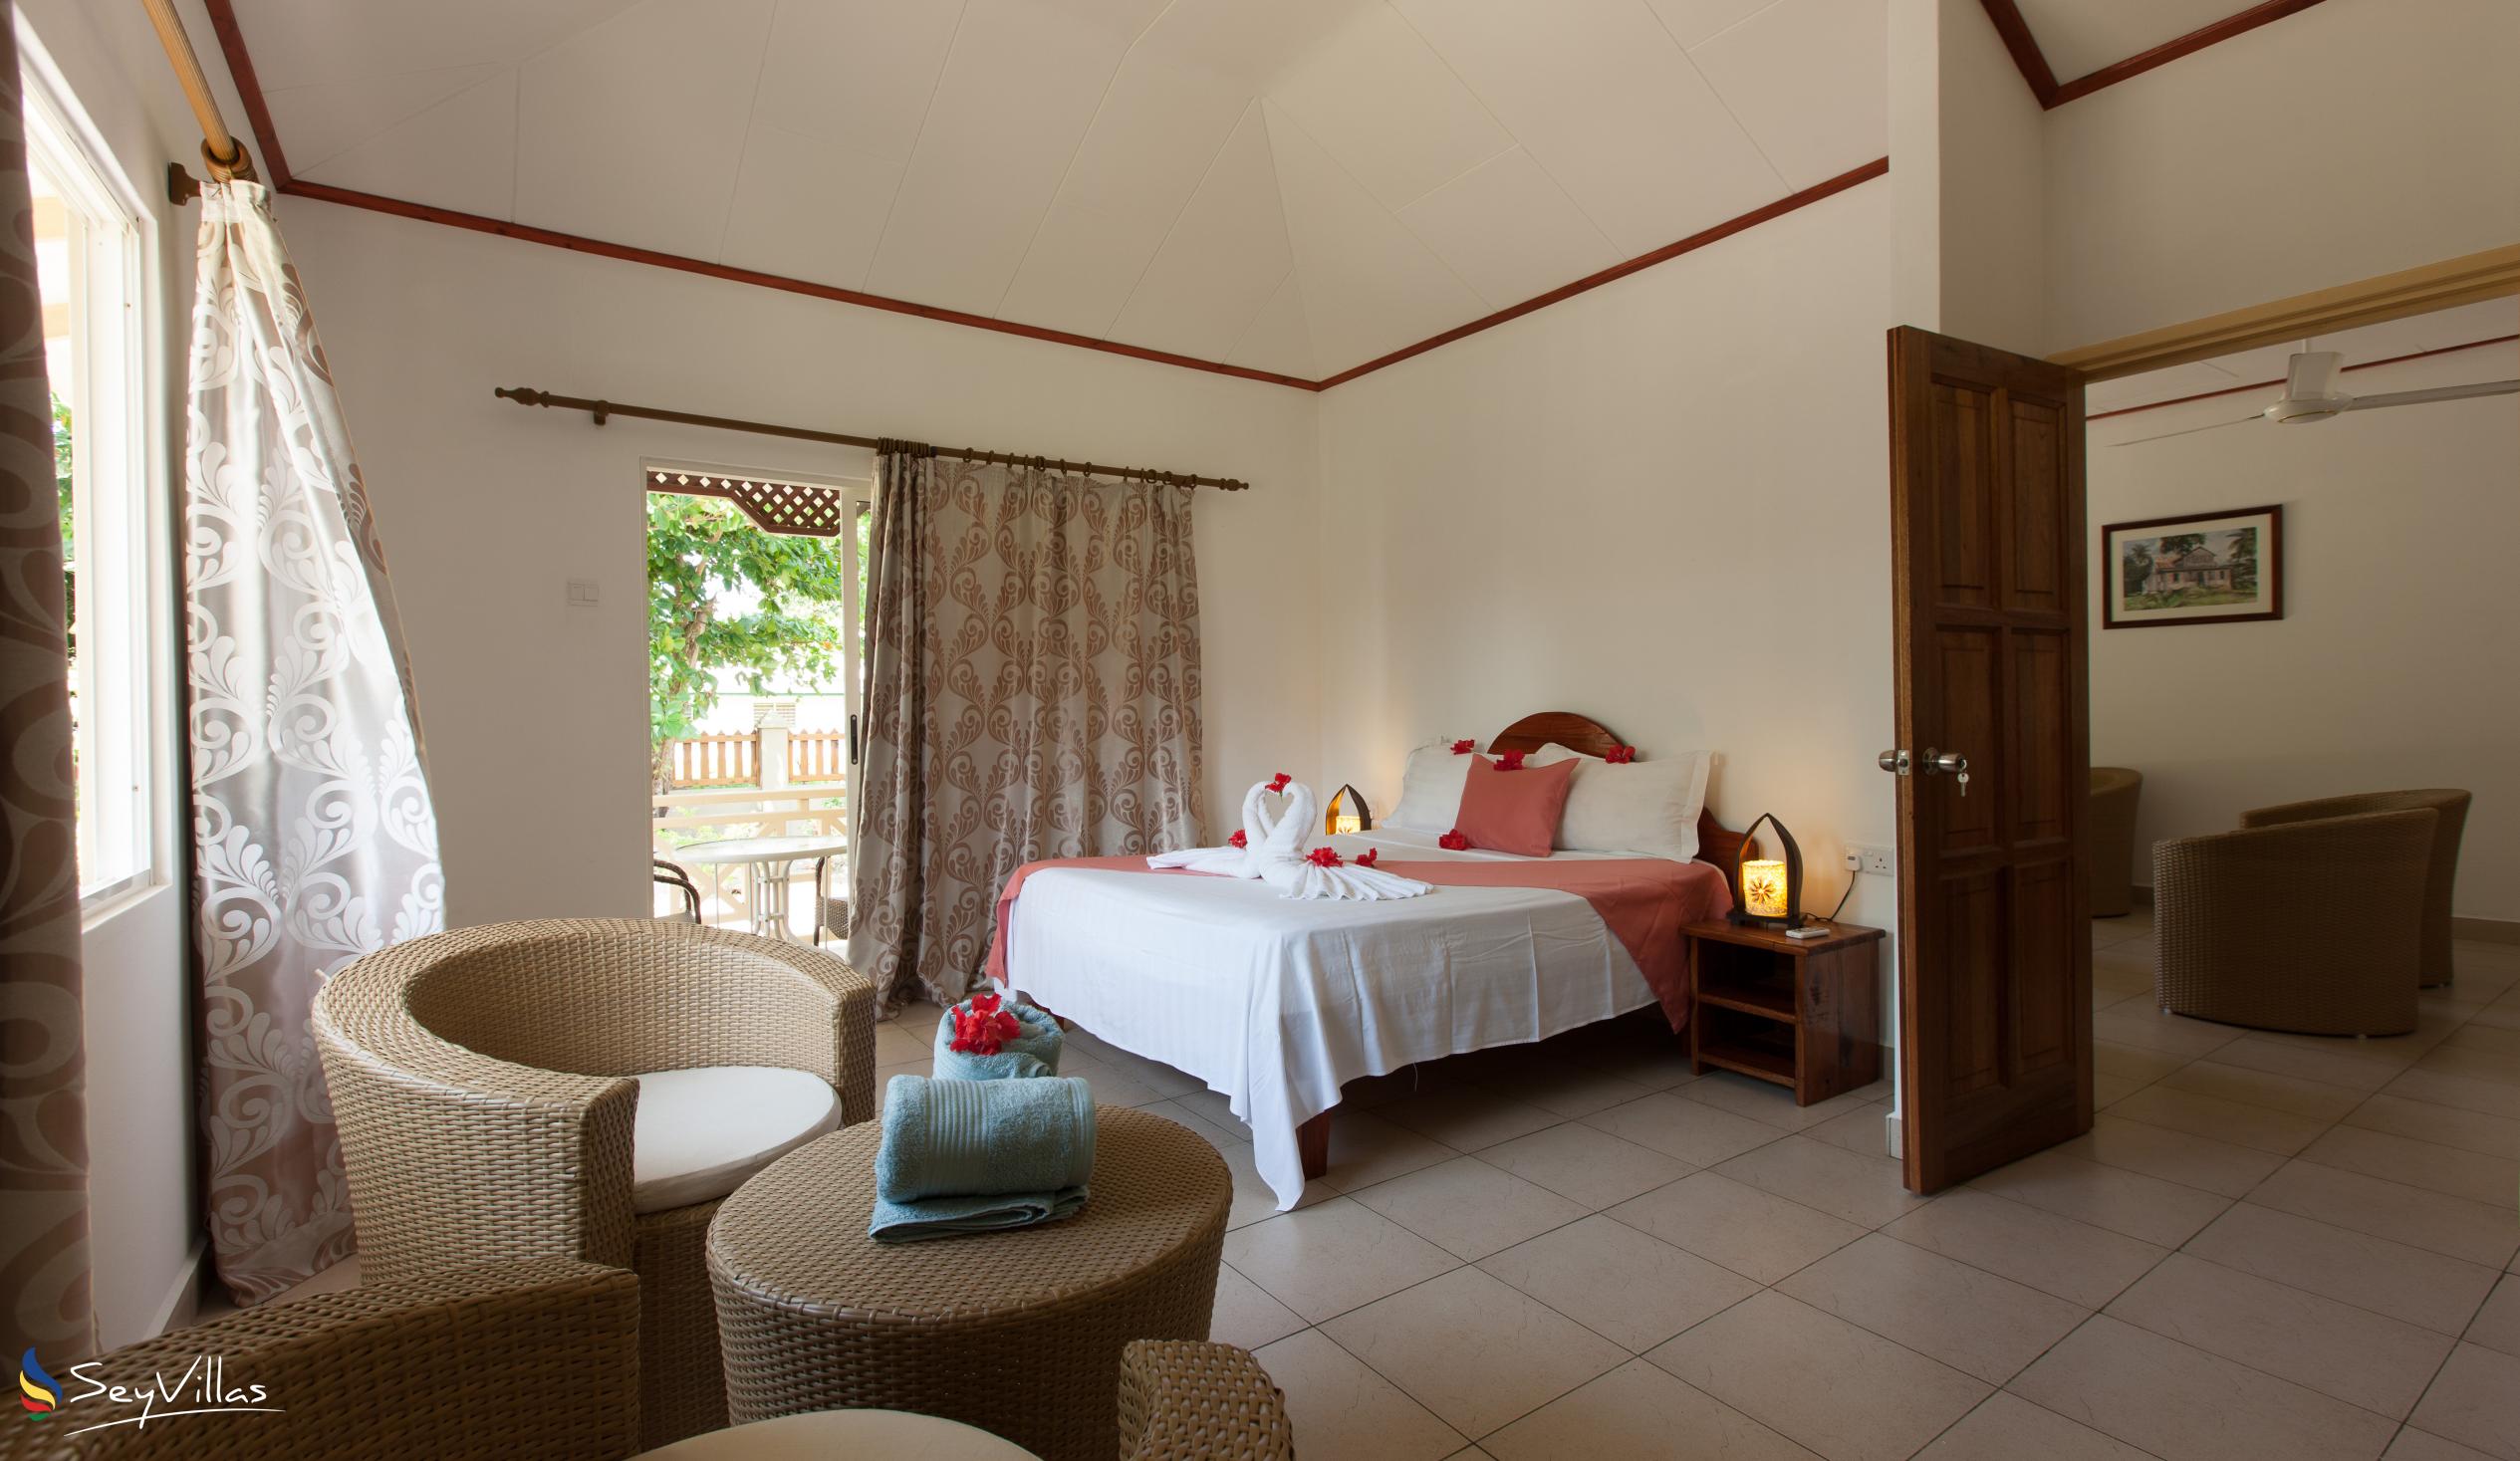 Foto 15: Hostellerie La Digue - Bungalow con 3 camere da letto - La Digue (Seychelles)